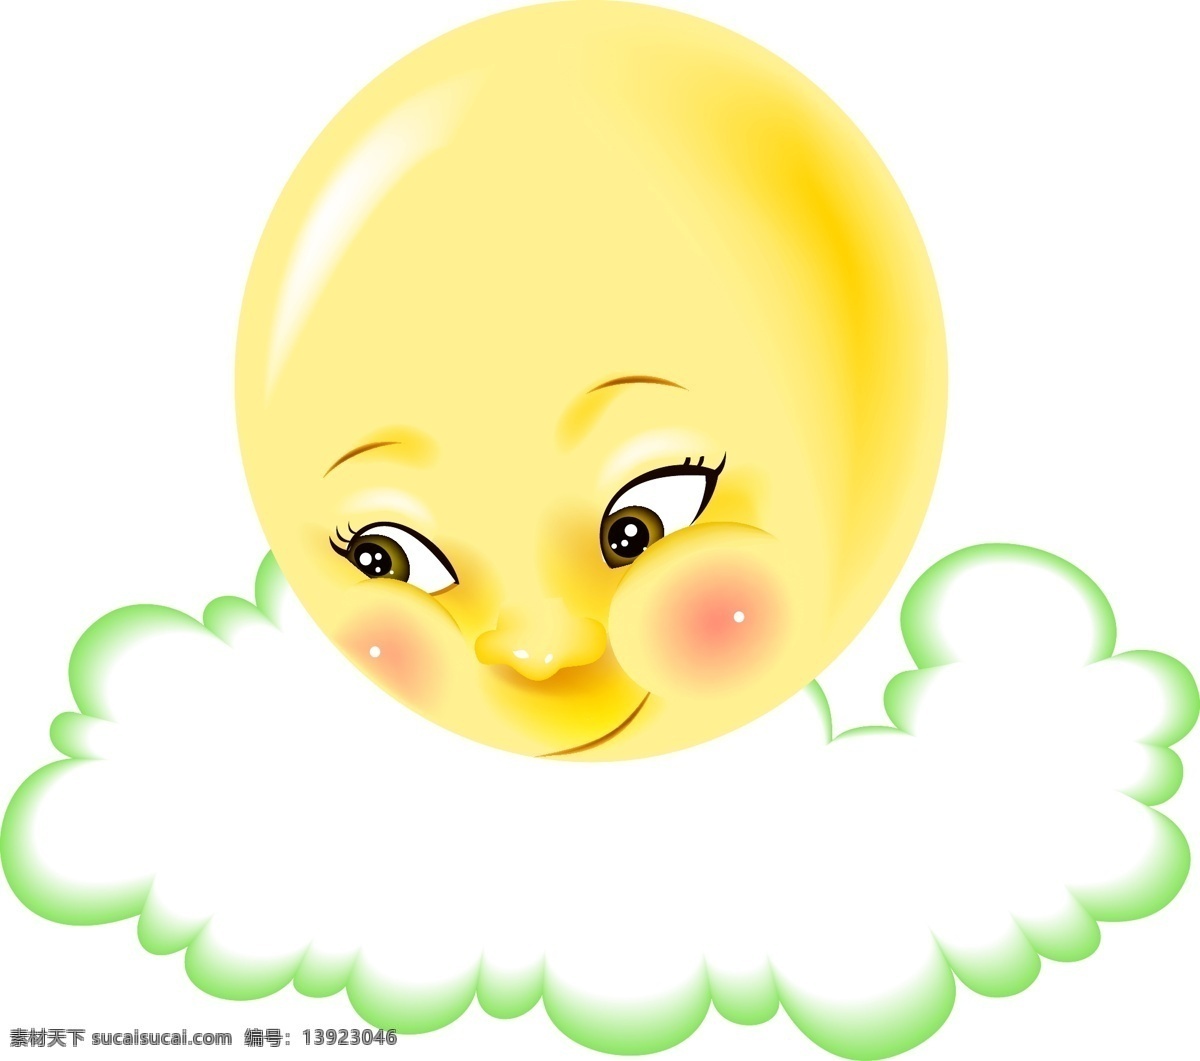 卡通 手绘 太阳 元素 黄色 可爱 笑脸 害羞 绿边 云朵 边框